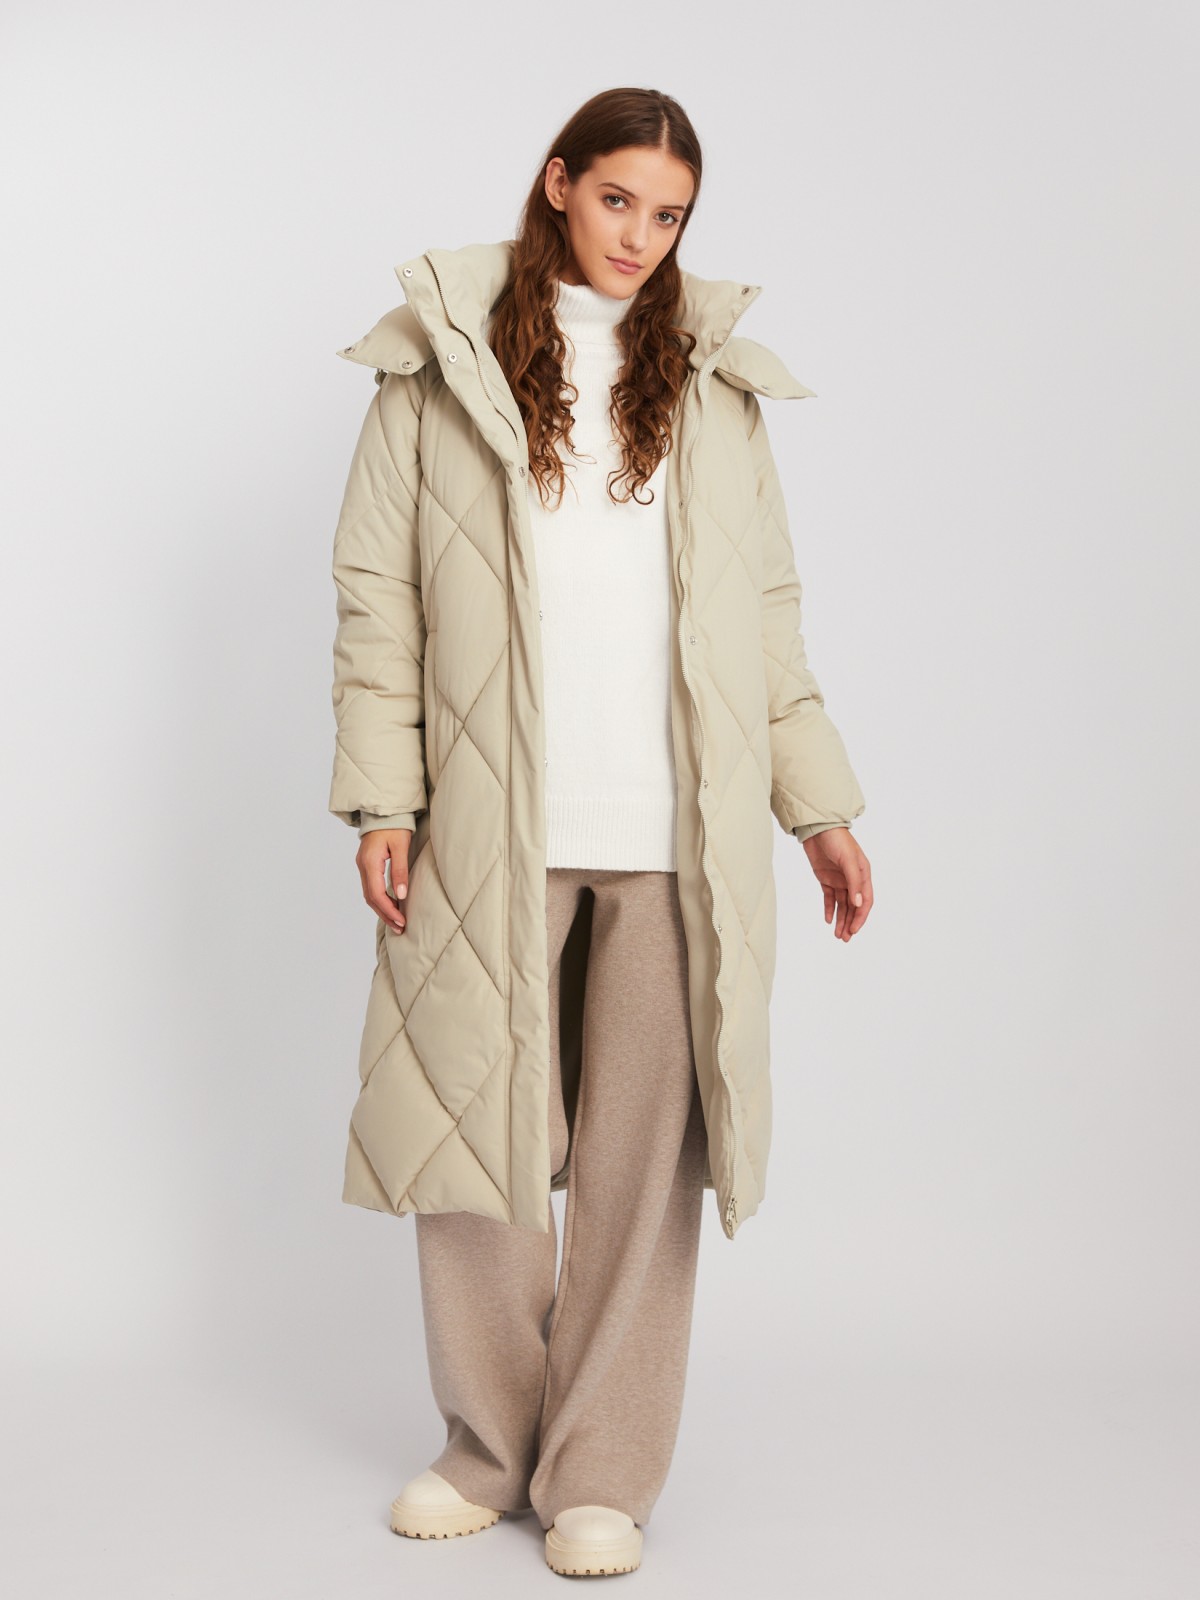 Тёплая стёганая куртка-пальто с капюшоном и поясом zolla 023425272134, цвет бежевый, размер XS - фото 2